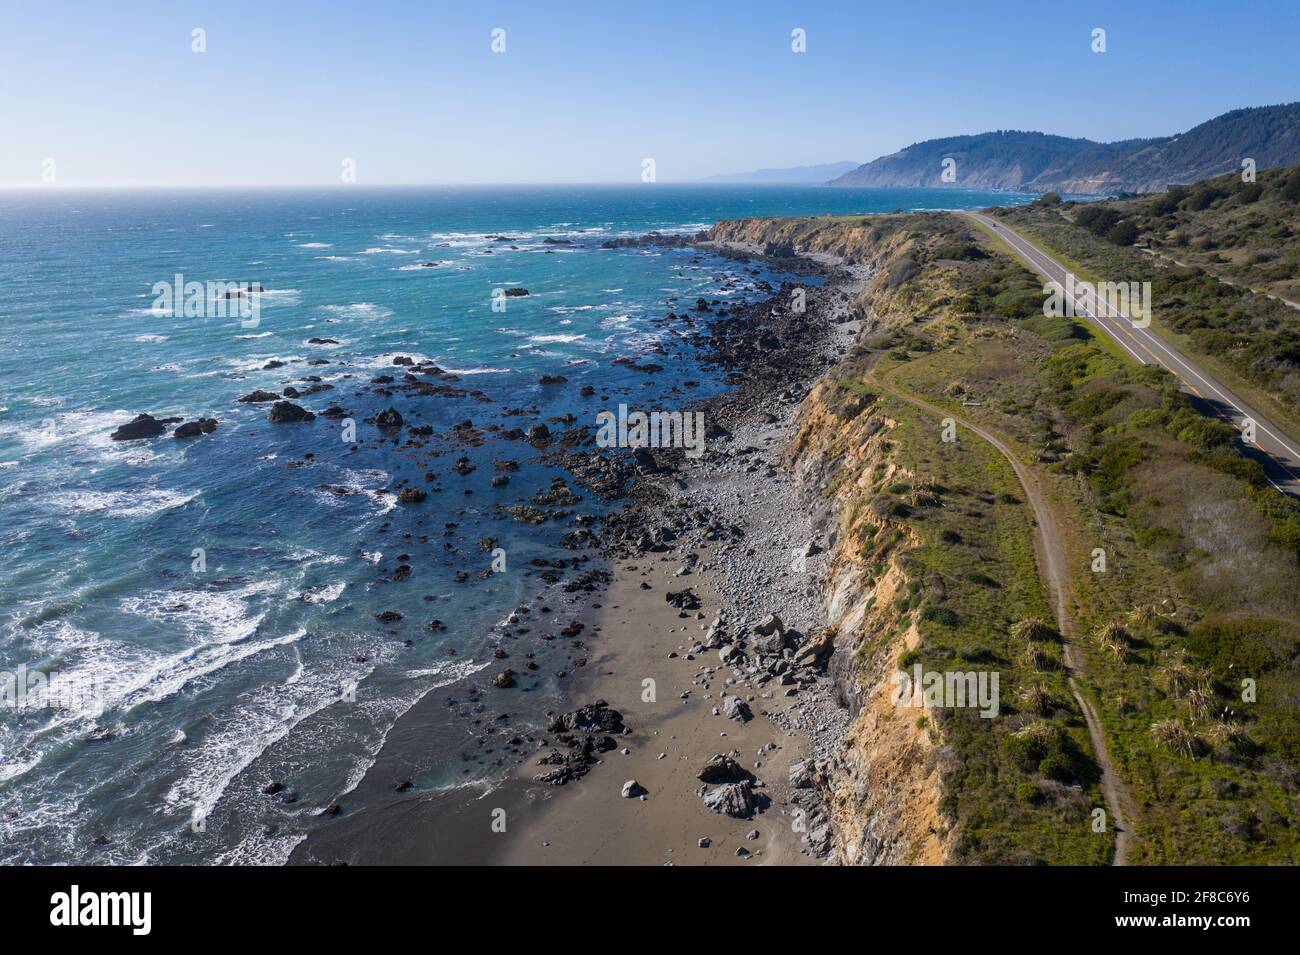 L'Oceano Pacifico incontra la costa rocciosa della California settentrionale a Mendocino. Questa regione panoramica è conosciuta per le sue splendide e frastagliate coste. Foto Stock